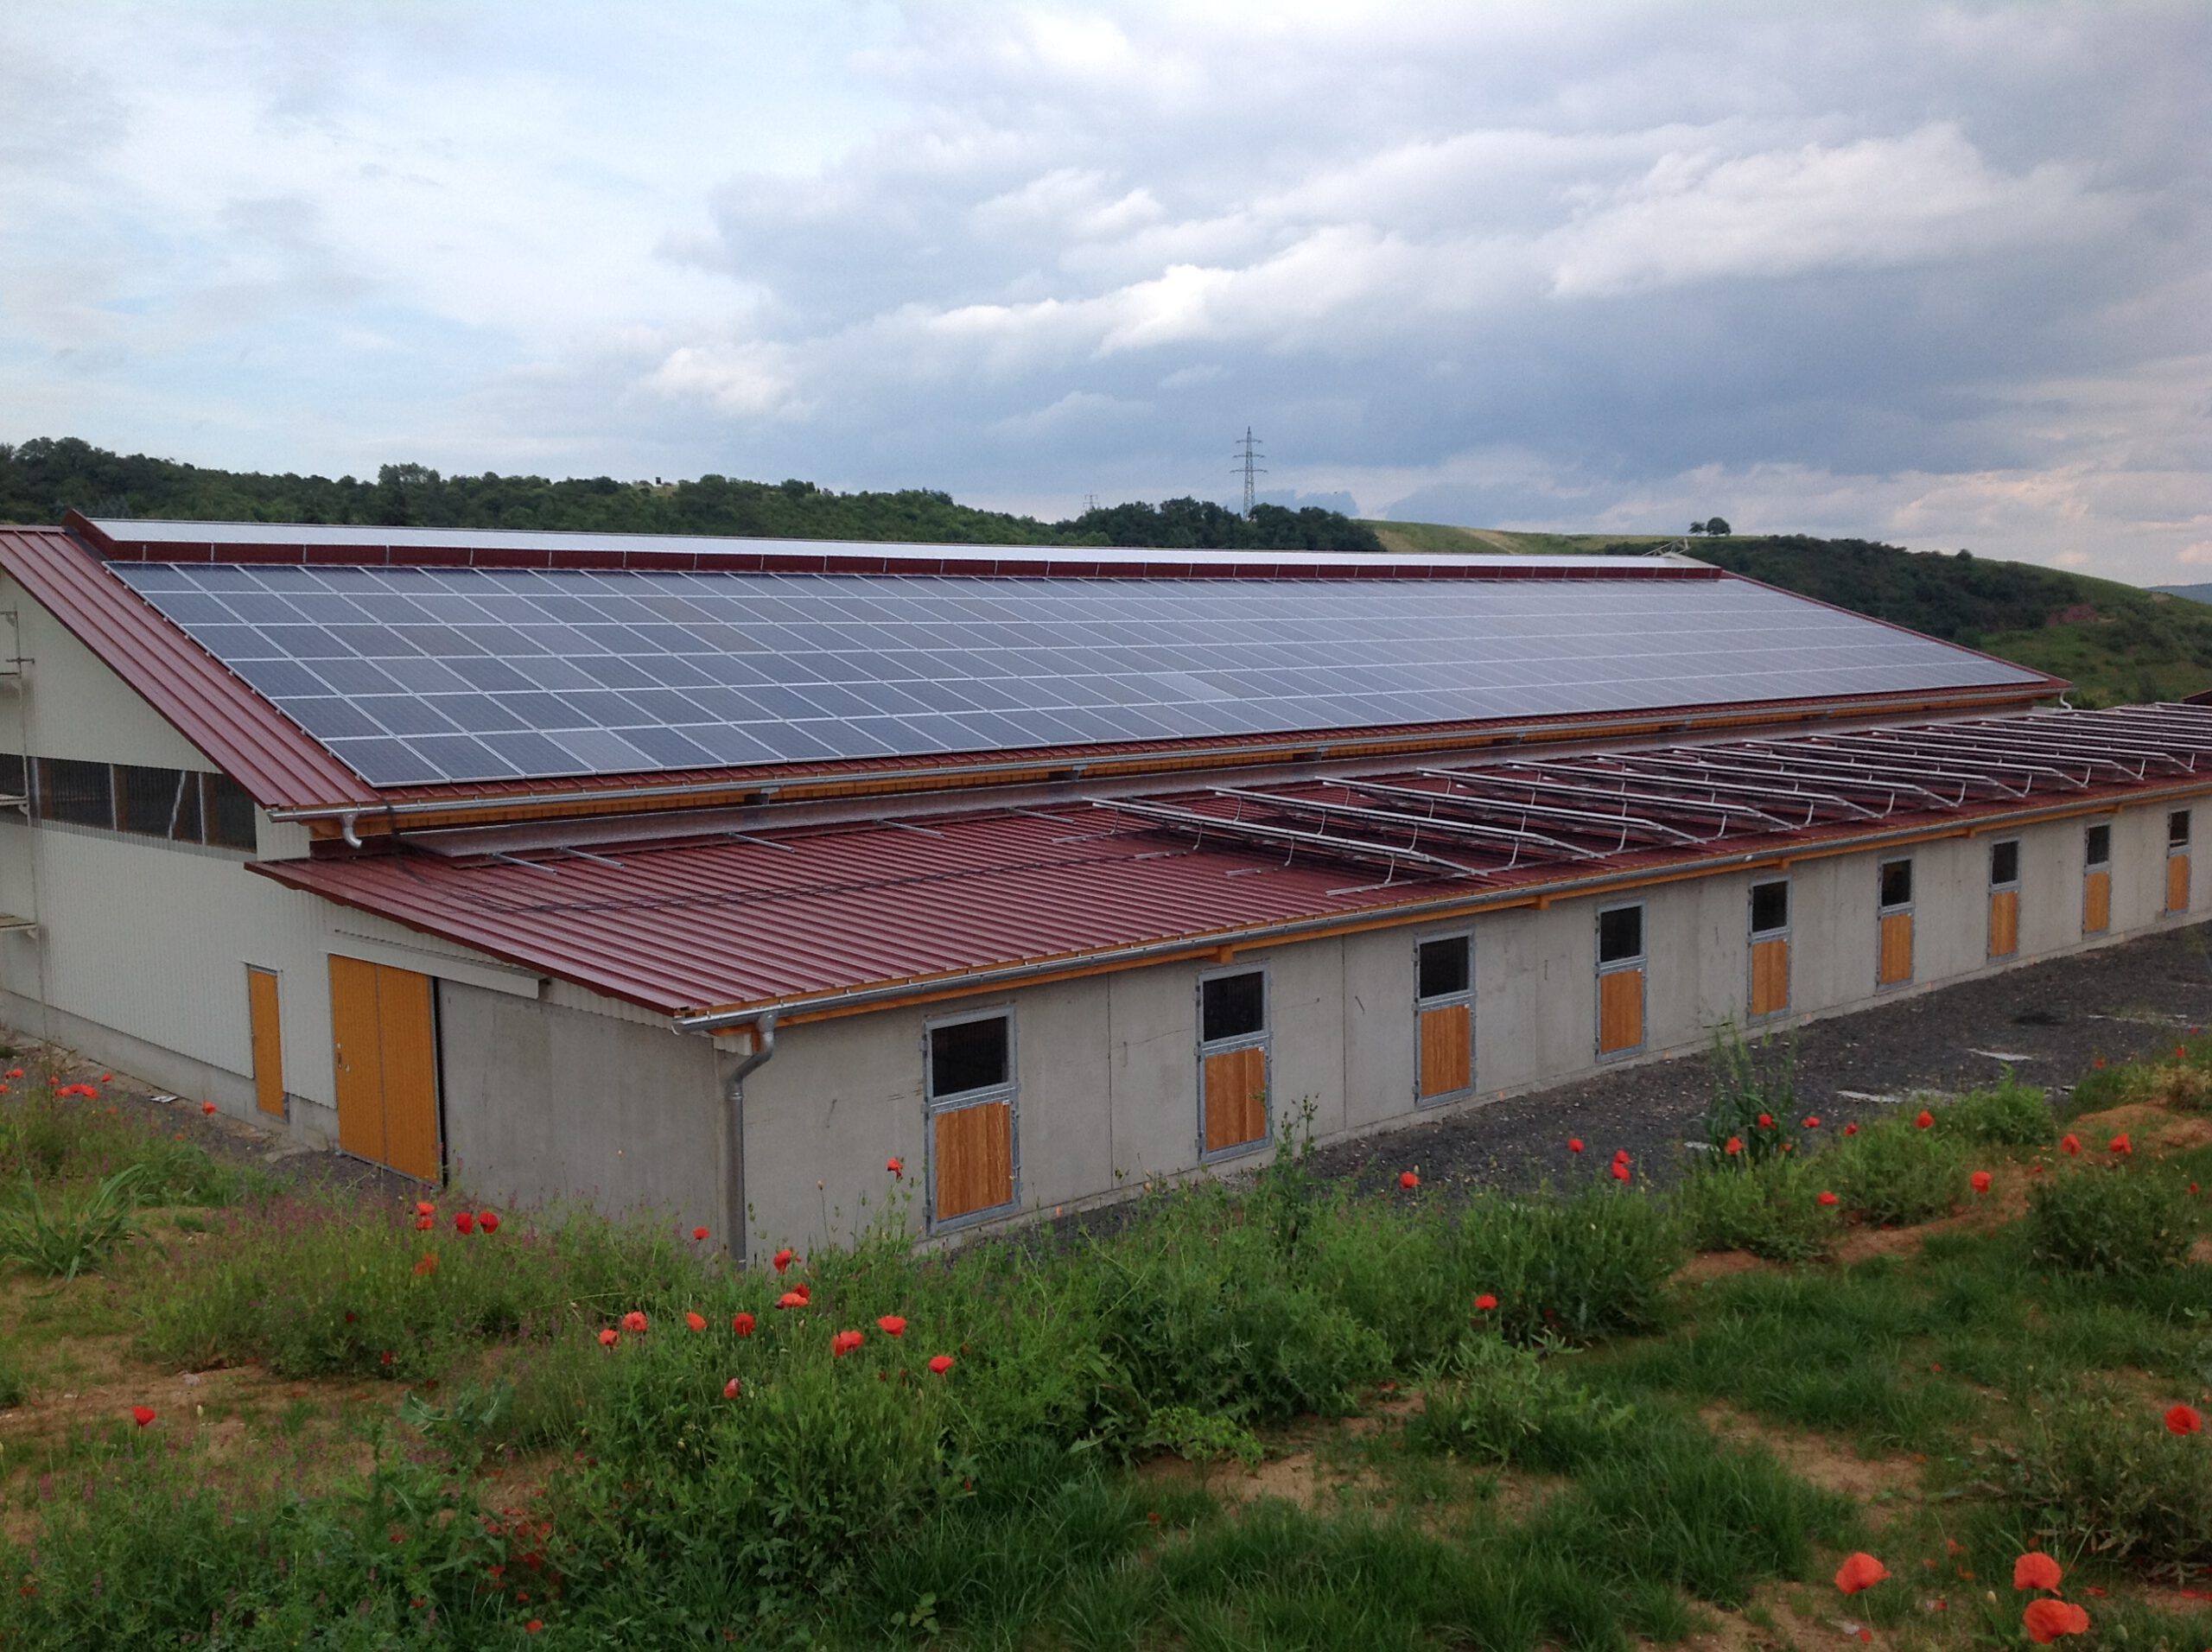 Photovoltaik, DAV-Projekt, Nachhaltige Zukunft, Solarenergie, Hessen, Rheinlandpfalz